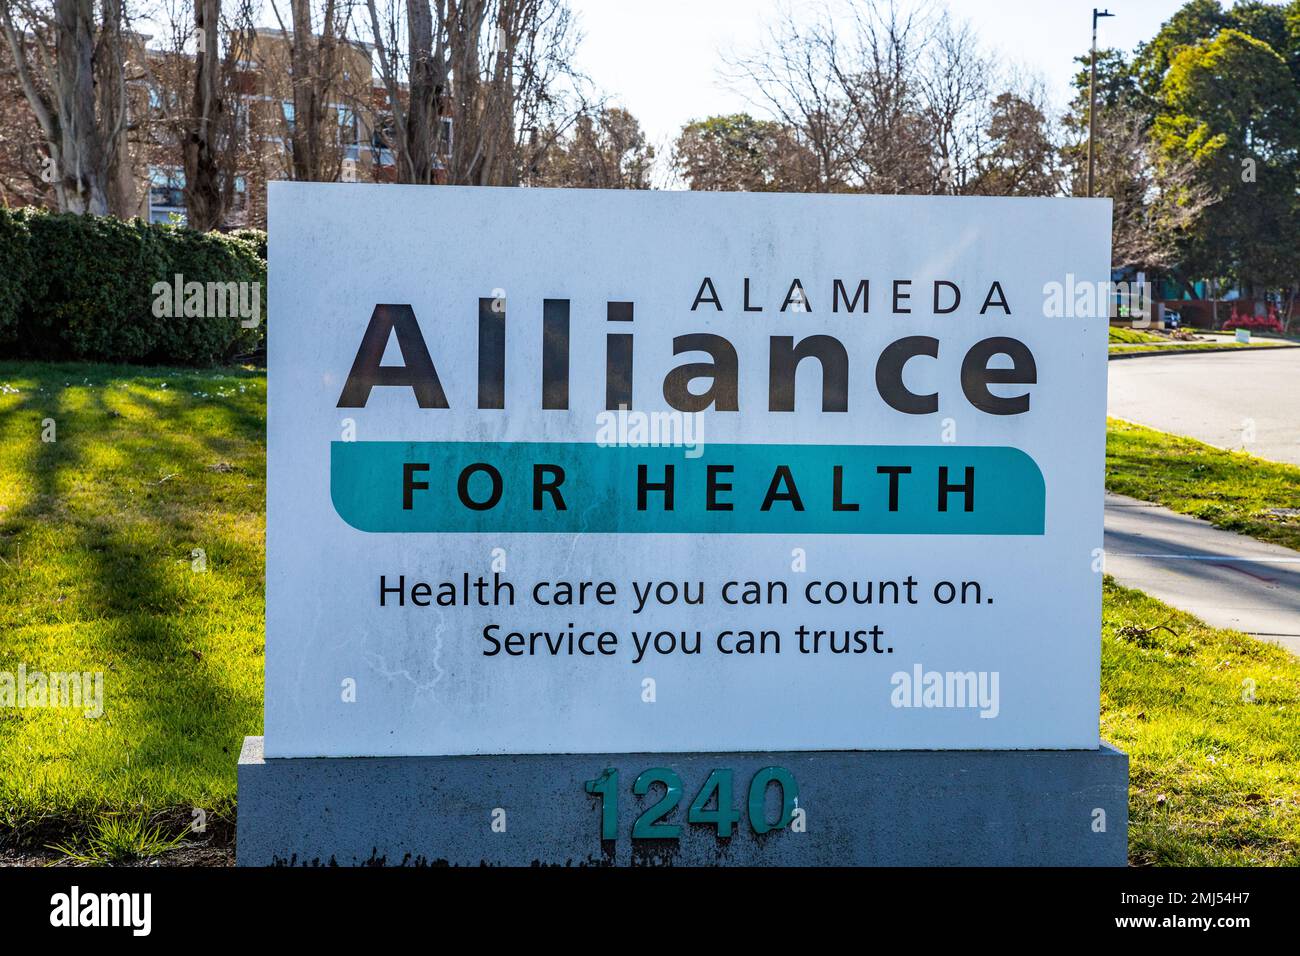 Alameda Alliance for Health à Alameda California USA, Un plan de santé pour les personnes à faible revenu. Banque D'Images